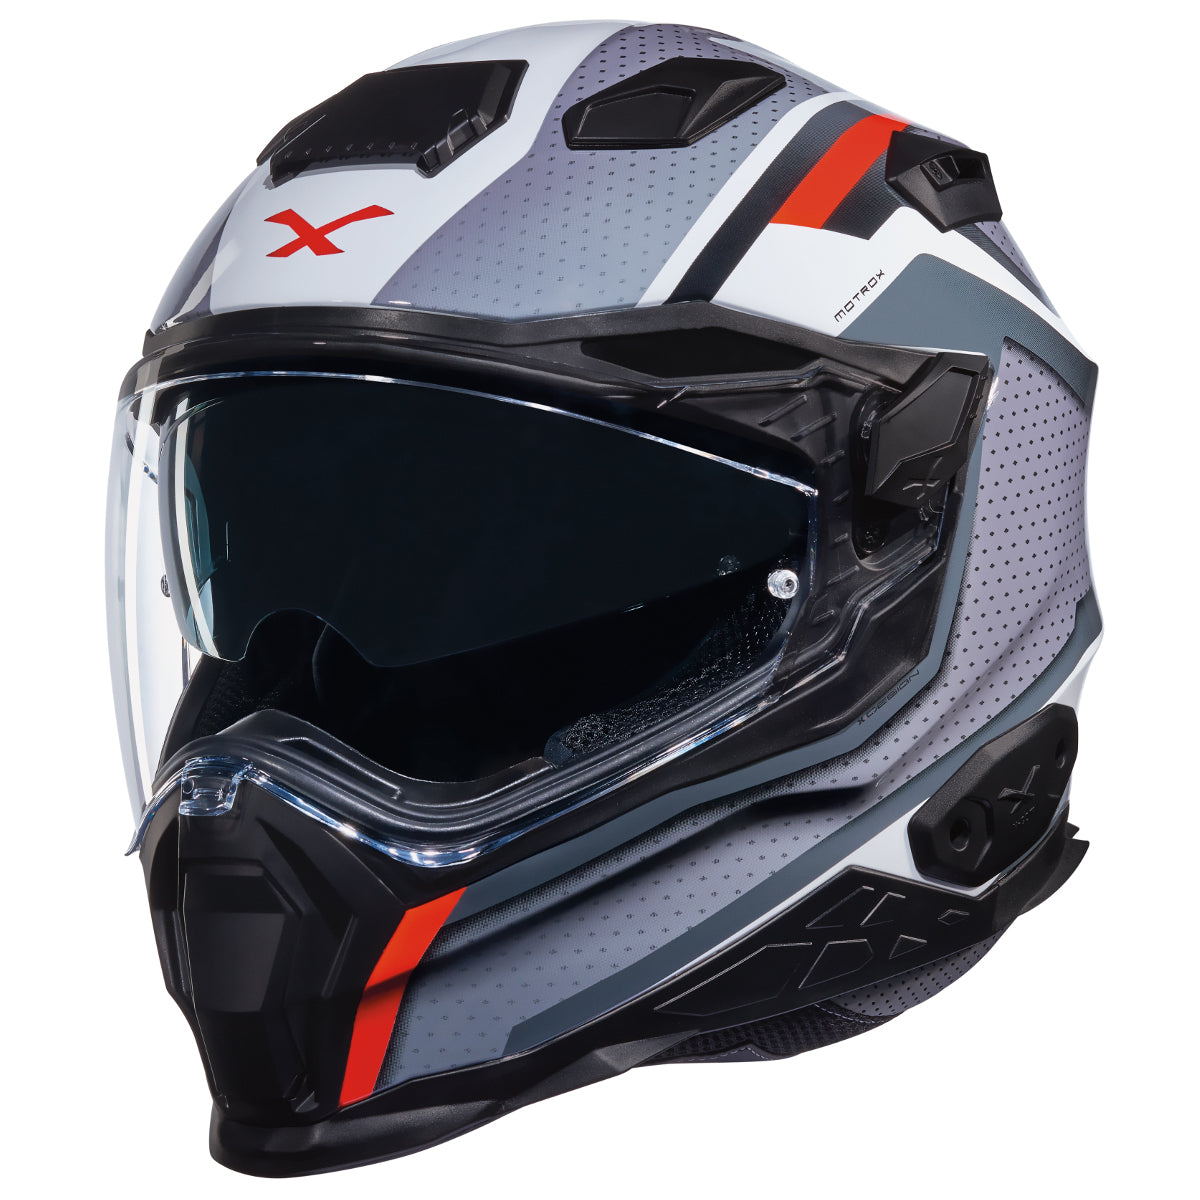 NEXX X.WST 2 Motrox Helmet (4 Colors)